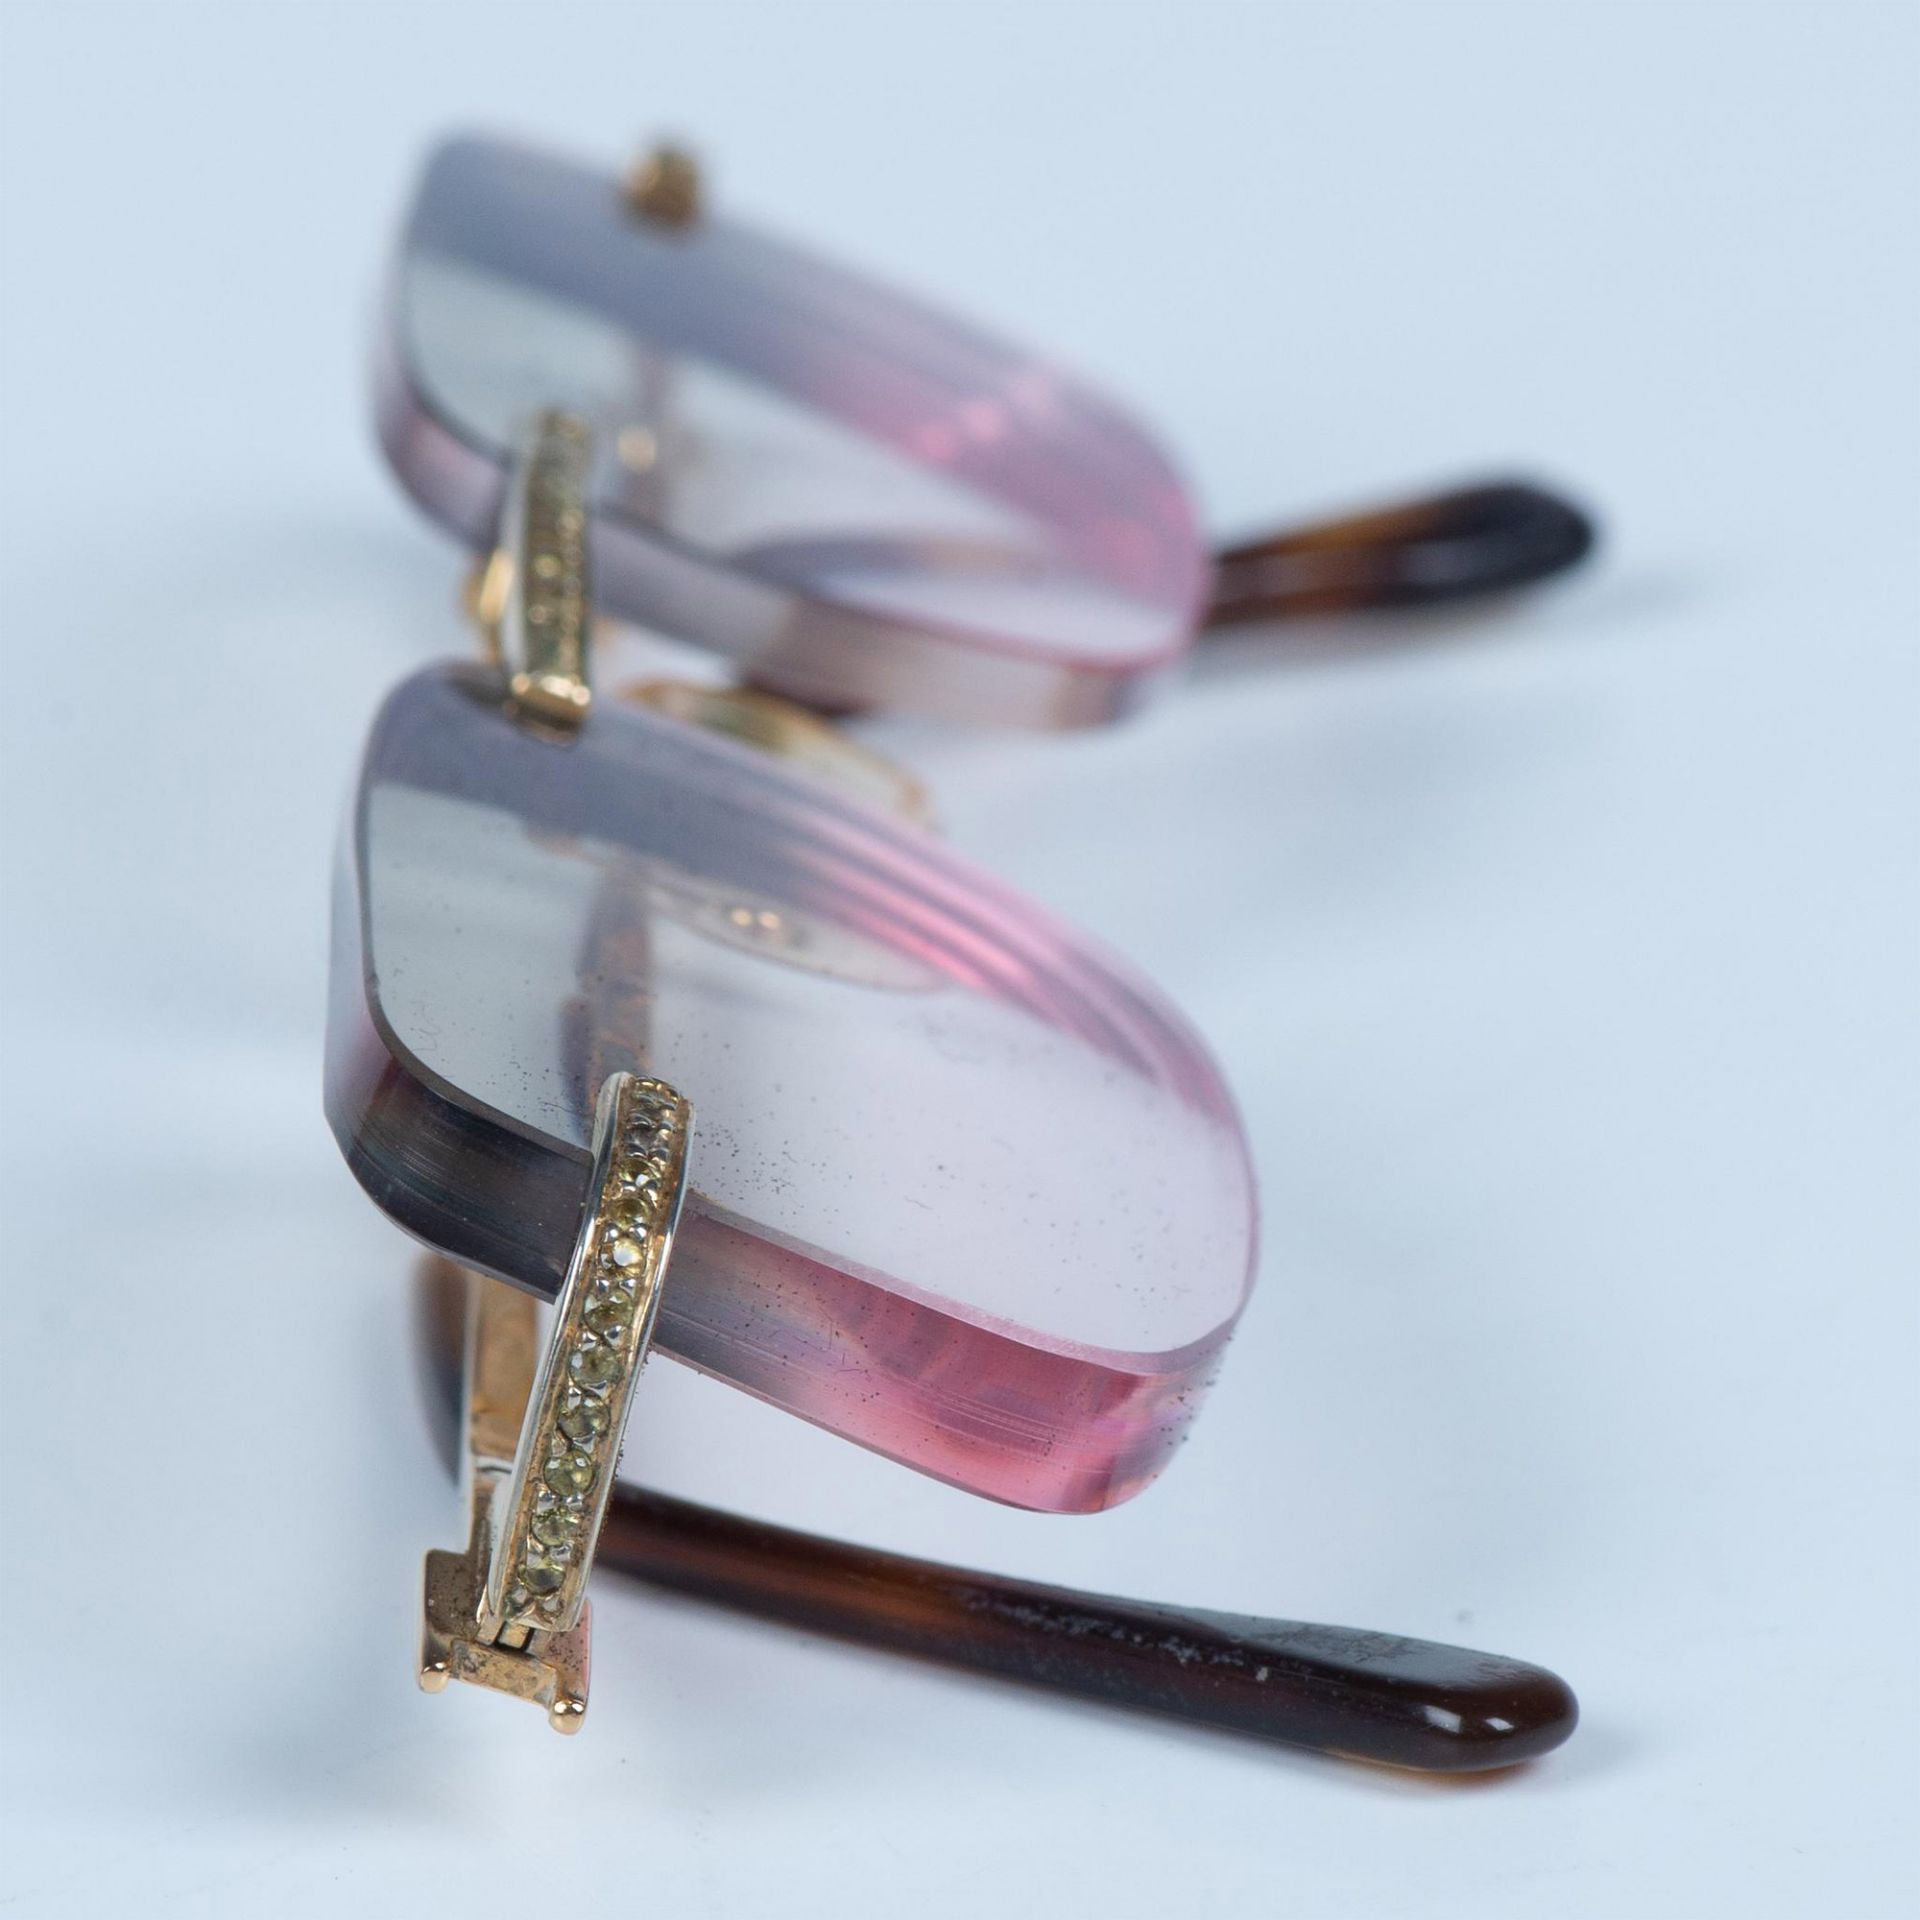 David Eden Eyeglass Frames - Image 8 of 9